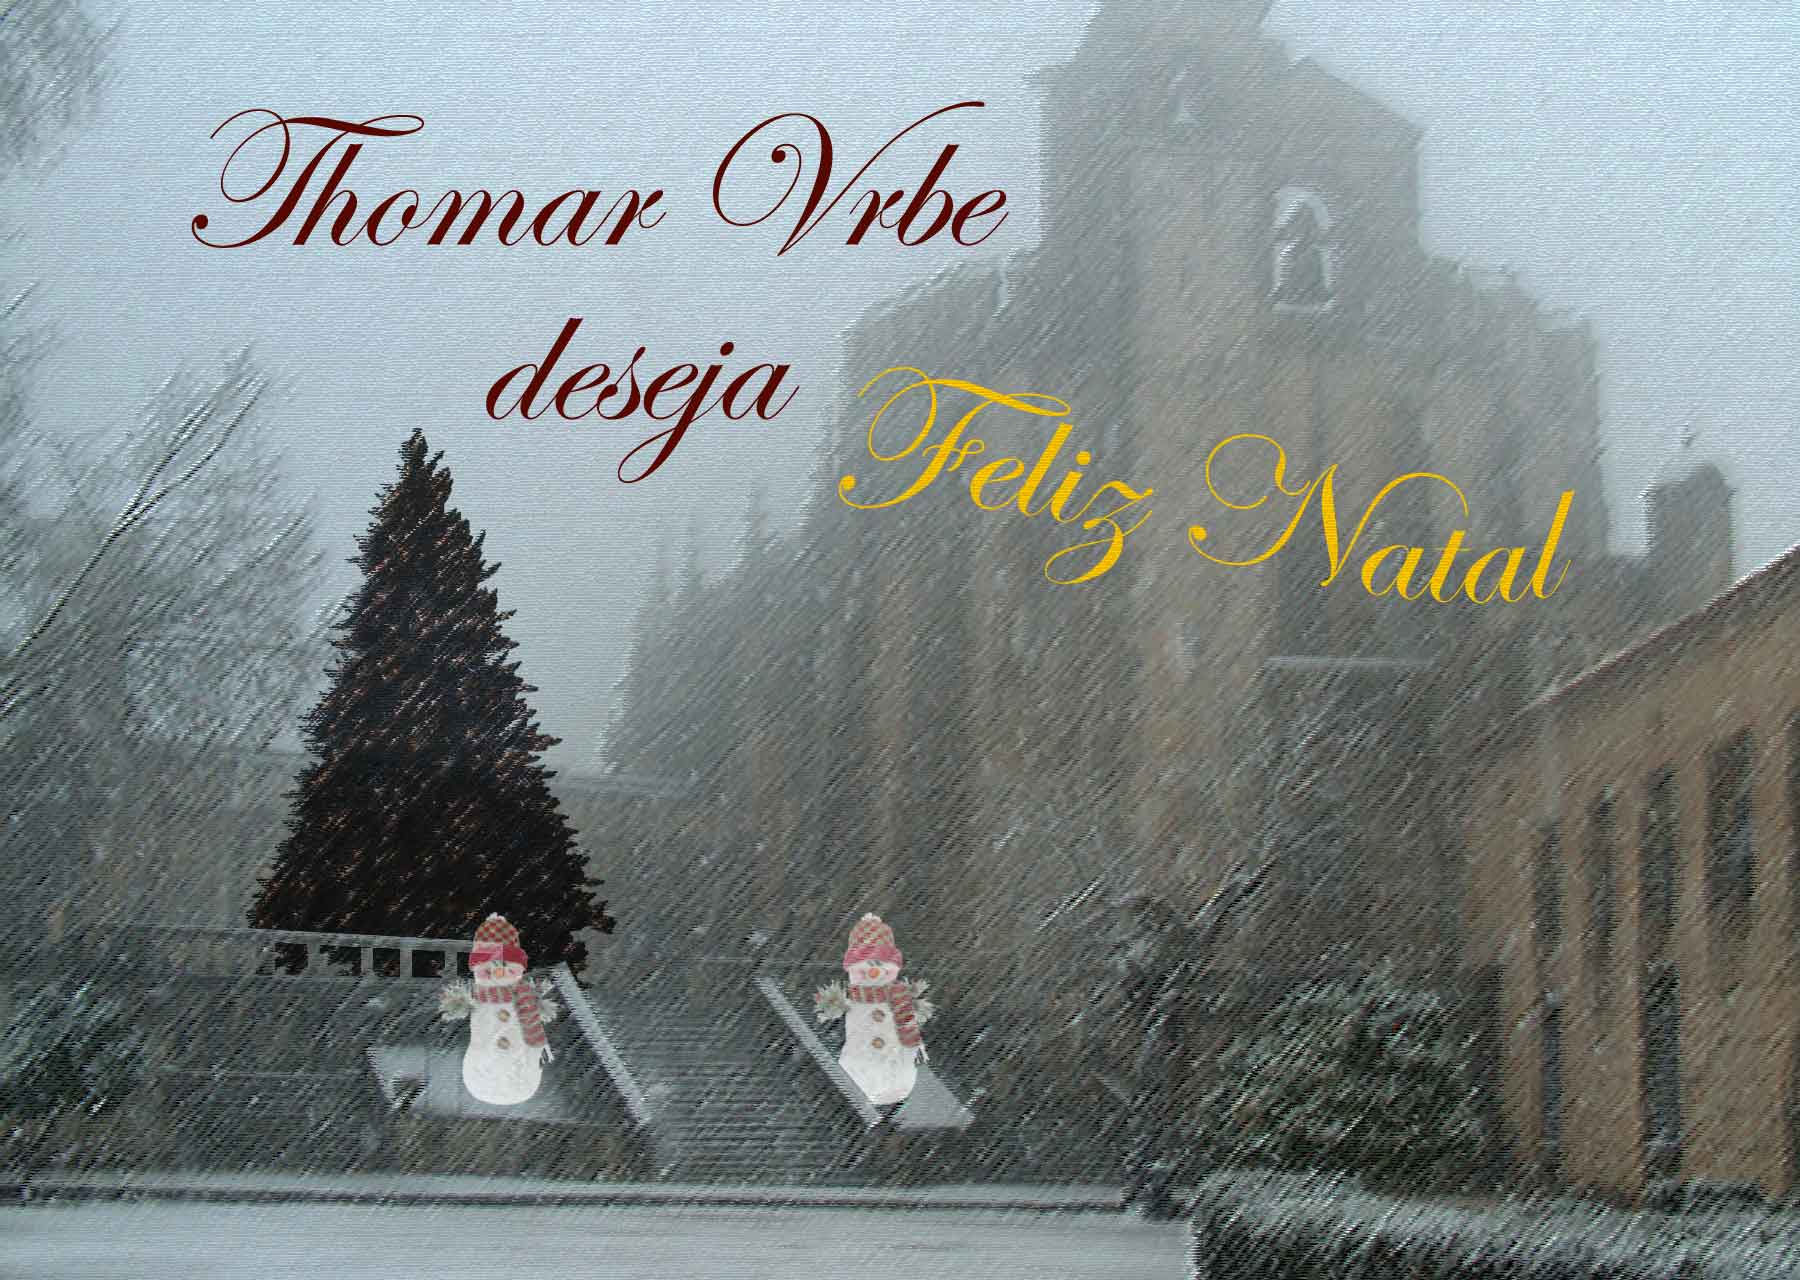 A Plataforma Thomar Vrbe Deseja a Todos Vós um Santo e Feliz Natal!